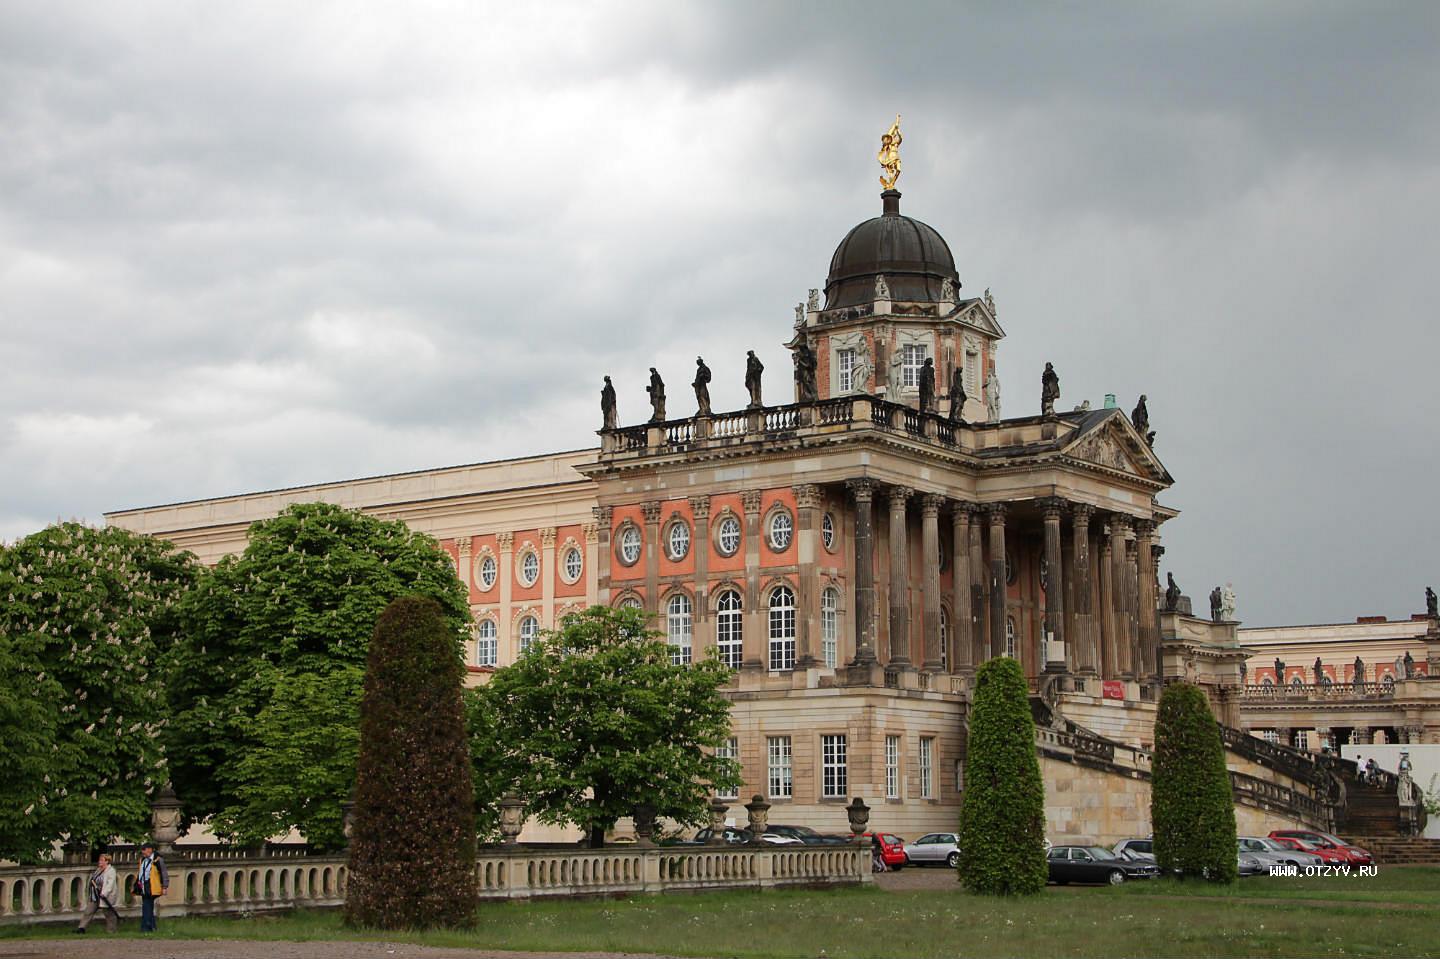 Достопримечательности Бранденбурга: список, фото и описание